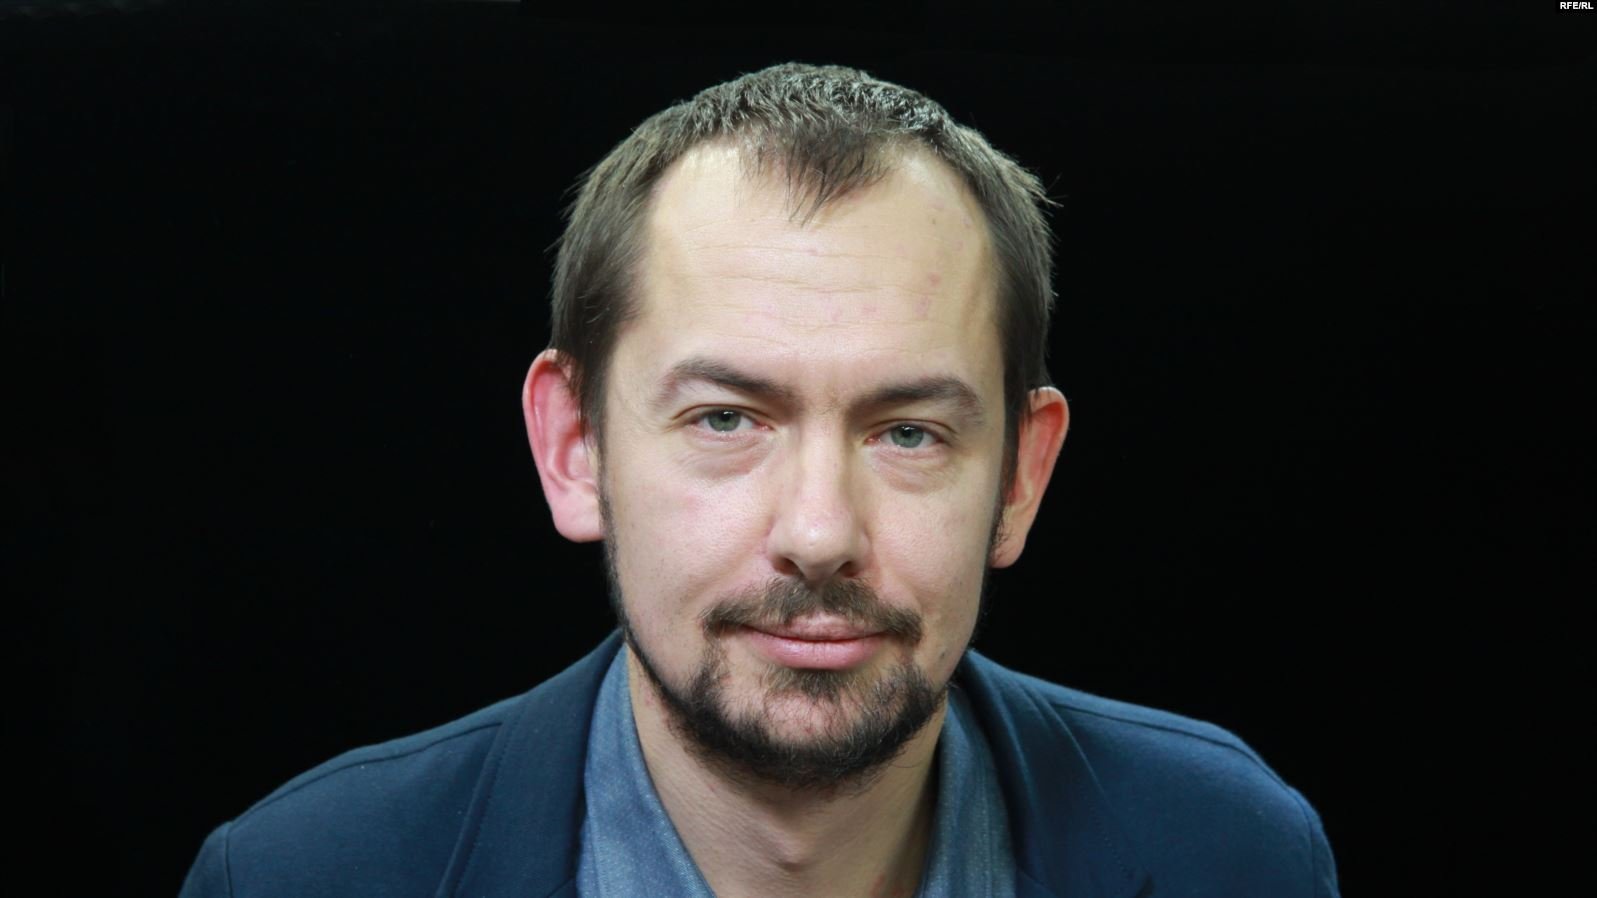 Цимбалюк обратился к Зеленскому после обстрелов в Золотом: "Предвыборная кампания уже закончилась"